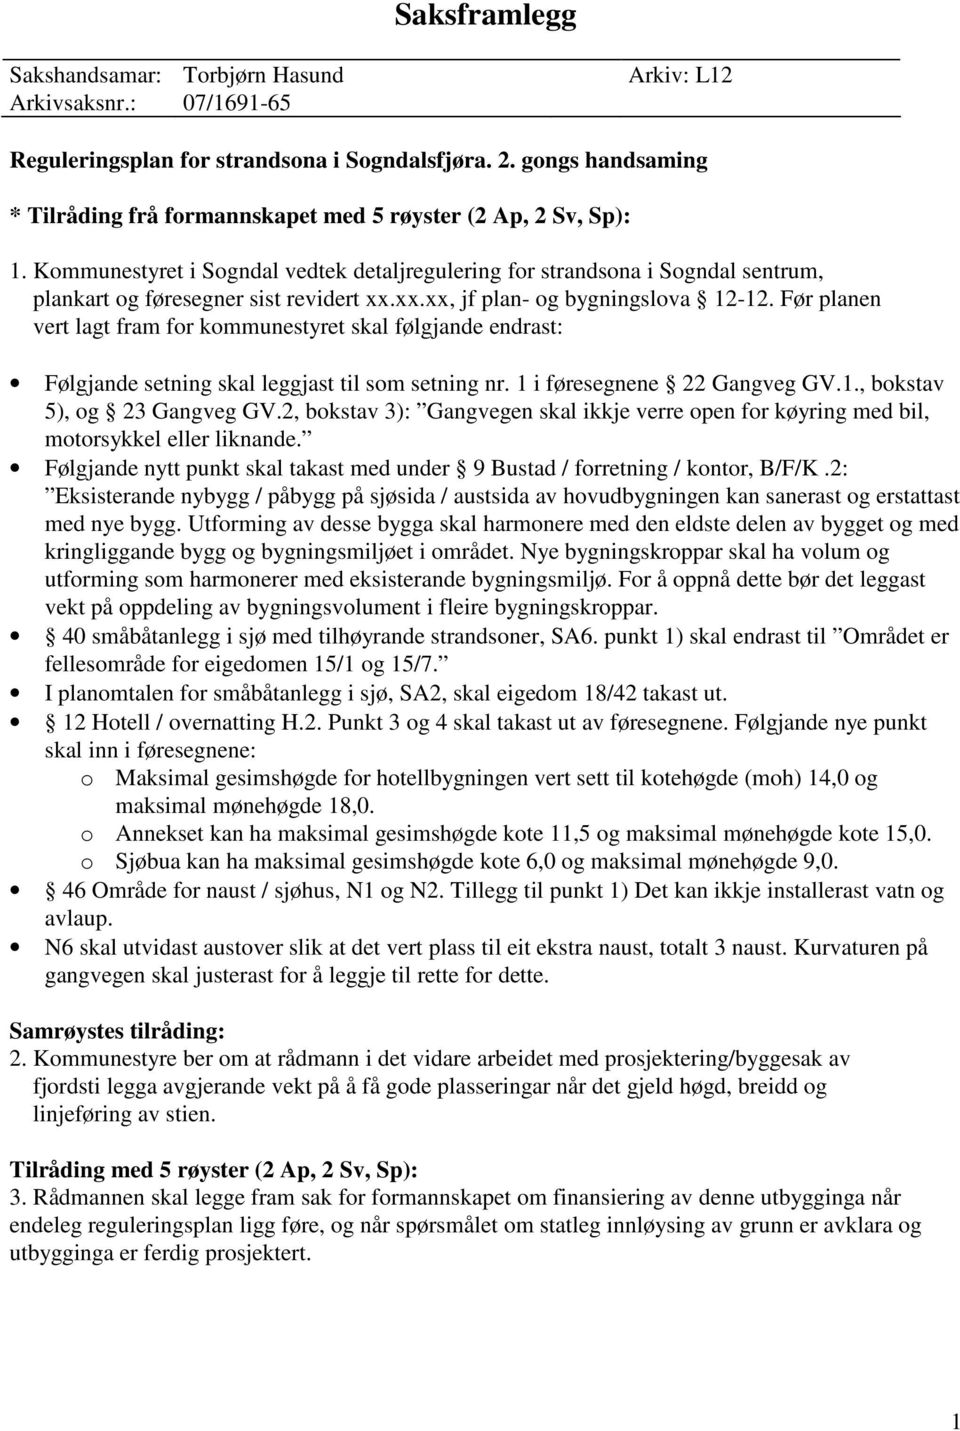 Kommunestyret i Sogndal vedtek detaljregulering for strandsona i Sogndal sentrum, plankart og føresegner sist revidert xx.xx.xx, jf plan- og bygningslova 12-12.